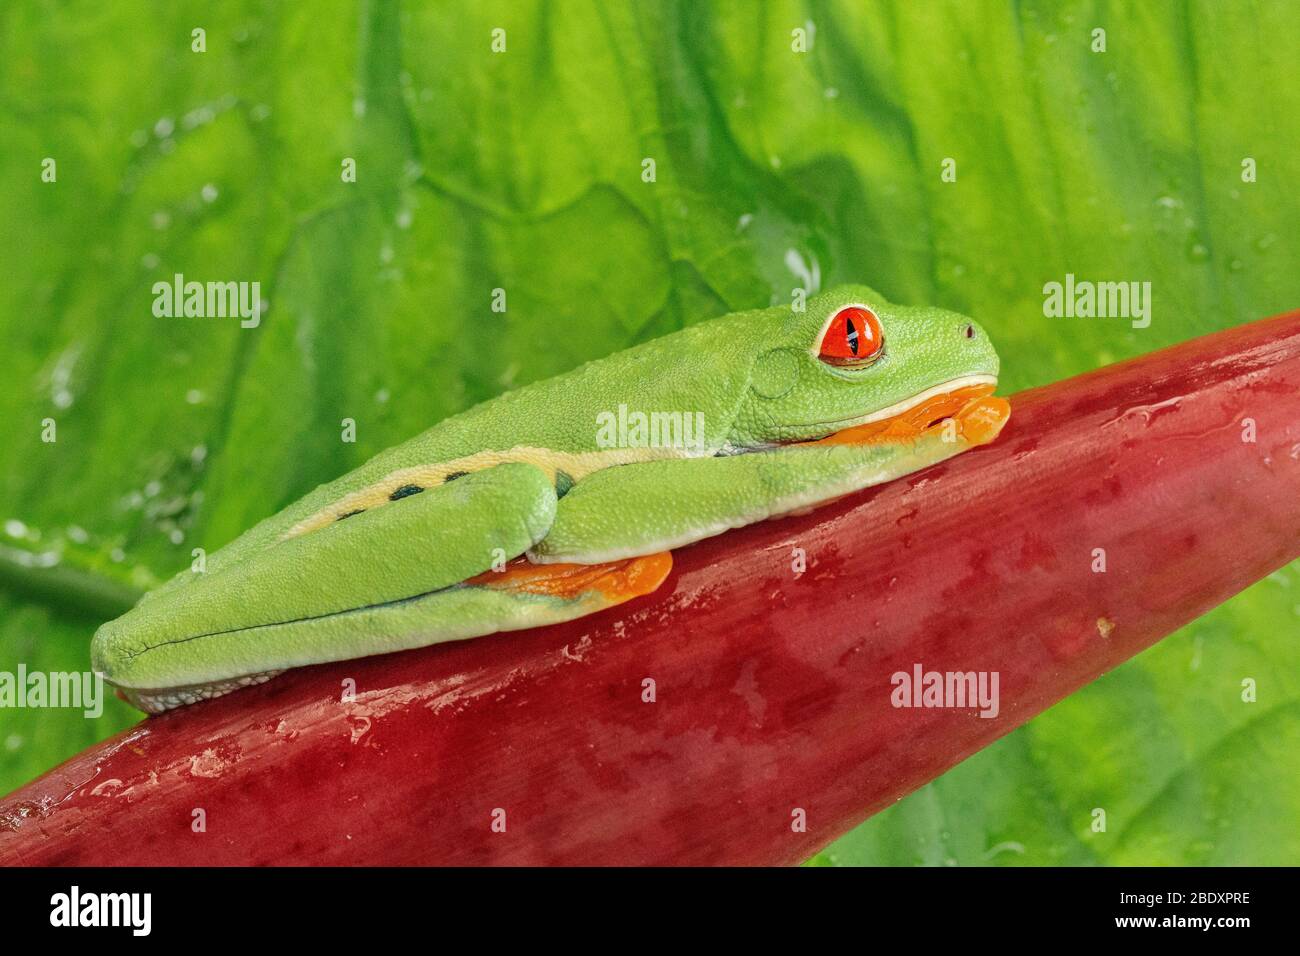 Una rana di foglie dagli occhi rossi (agalichnis caldrylias) appoggiata su una foglia rossa di heliconia in Costa Rica Foto Stock